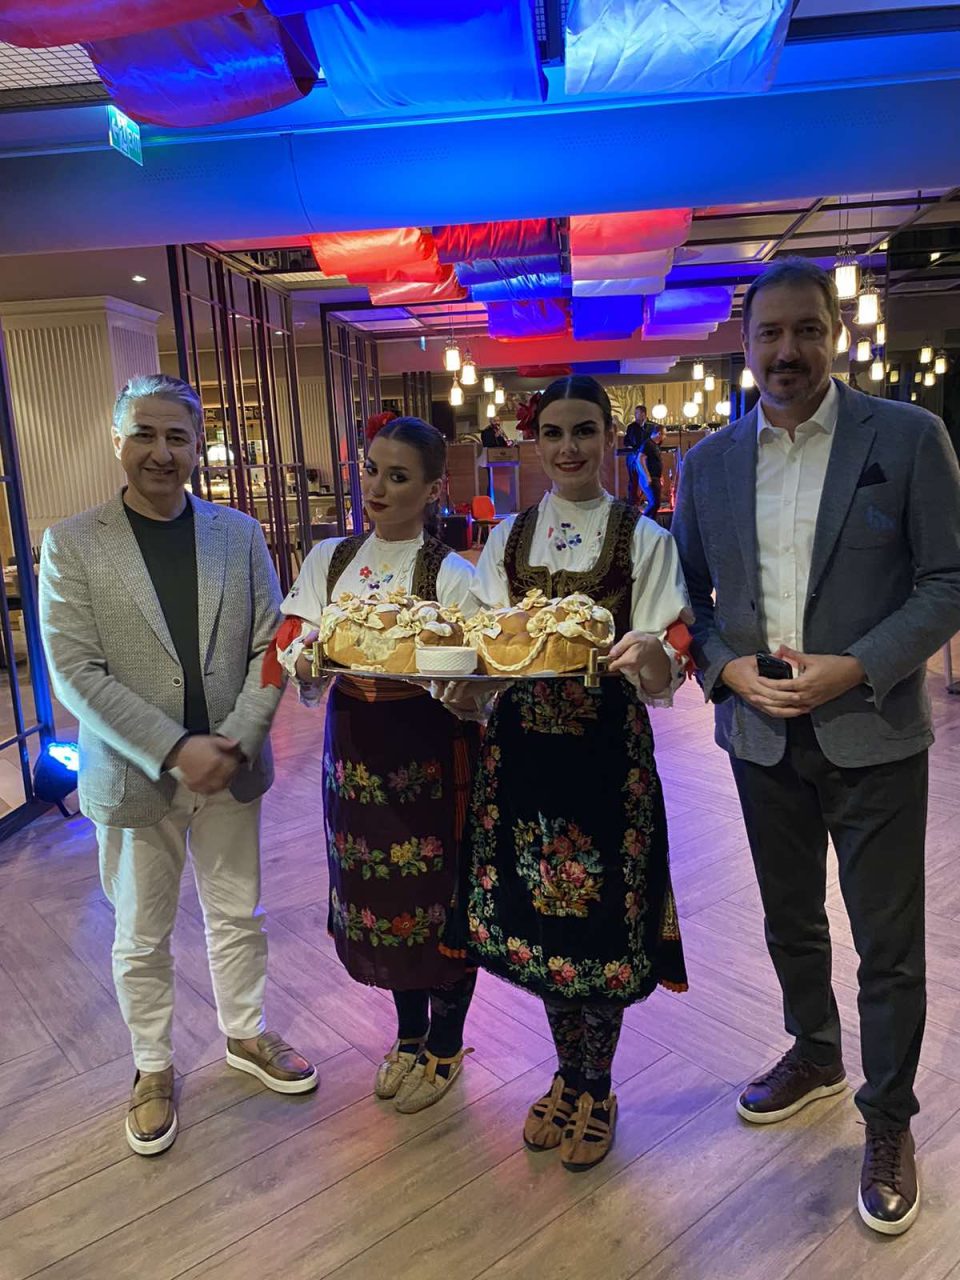 Љубителите на кулинарските специјалитети  имаа можност да уживаат во прекрасниот избор на јадења од српската национална кујна